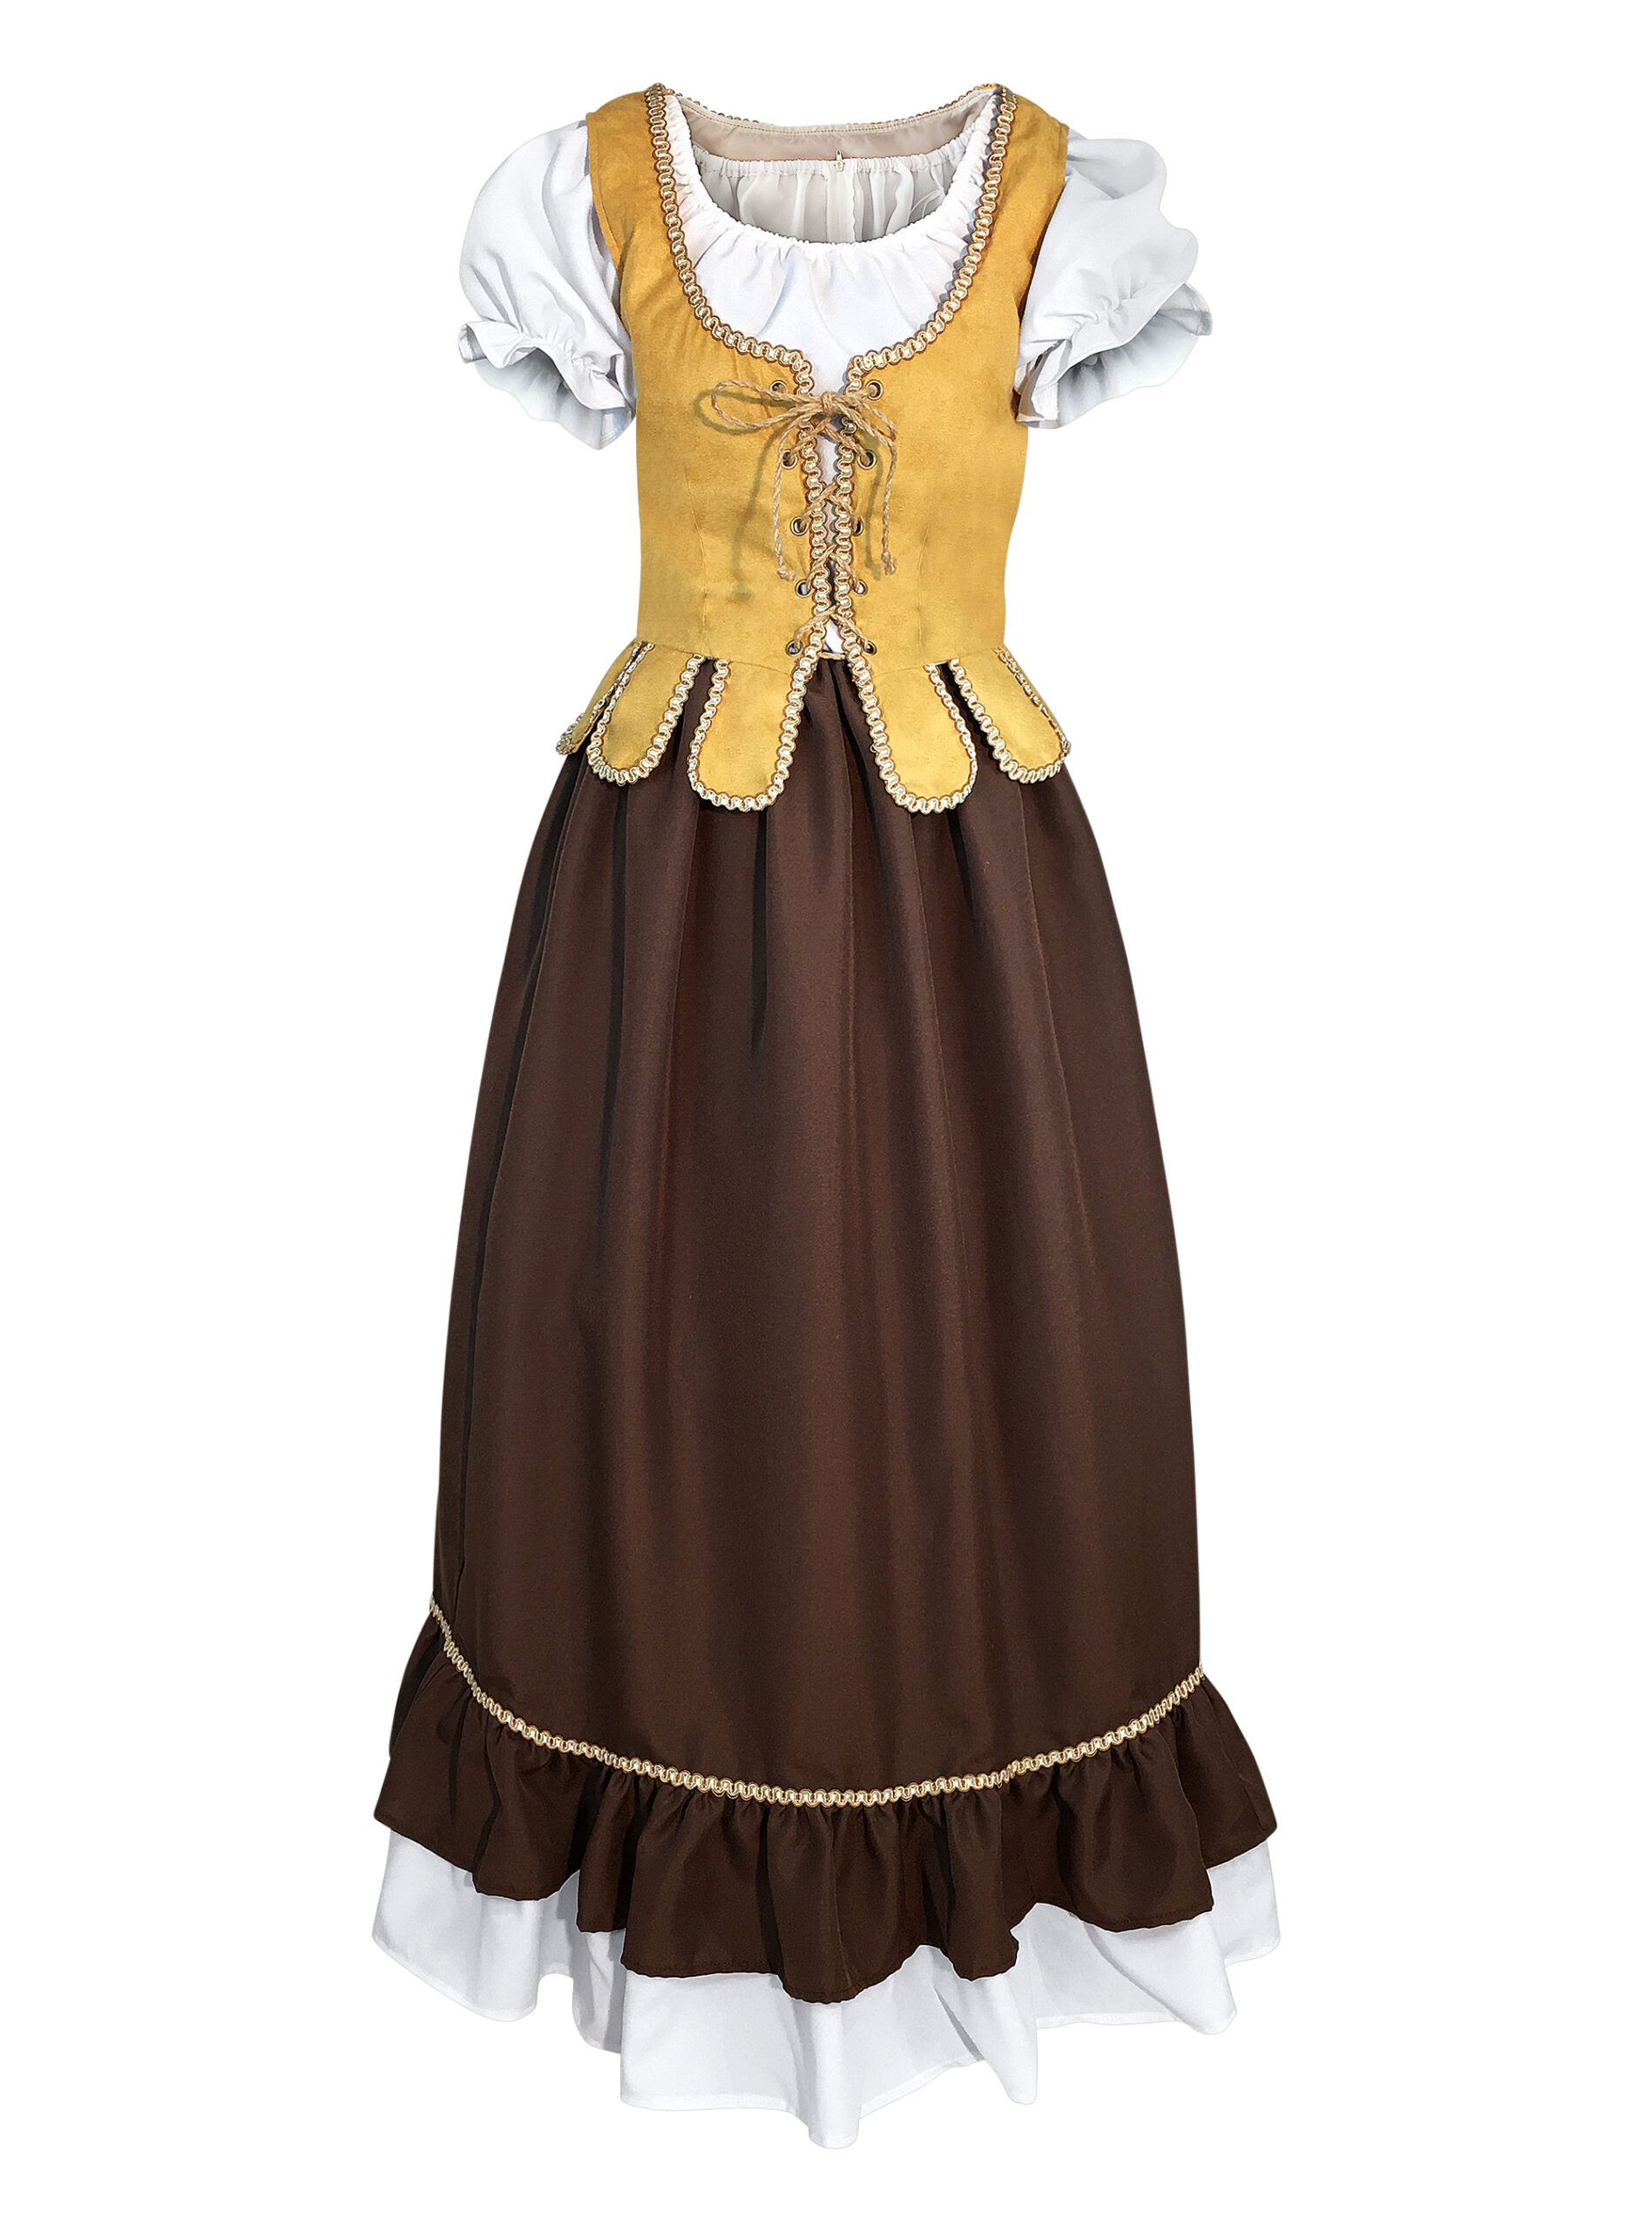 Medieval Maiden Dress